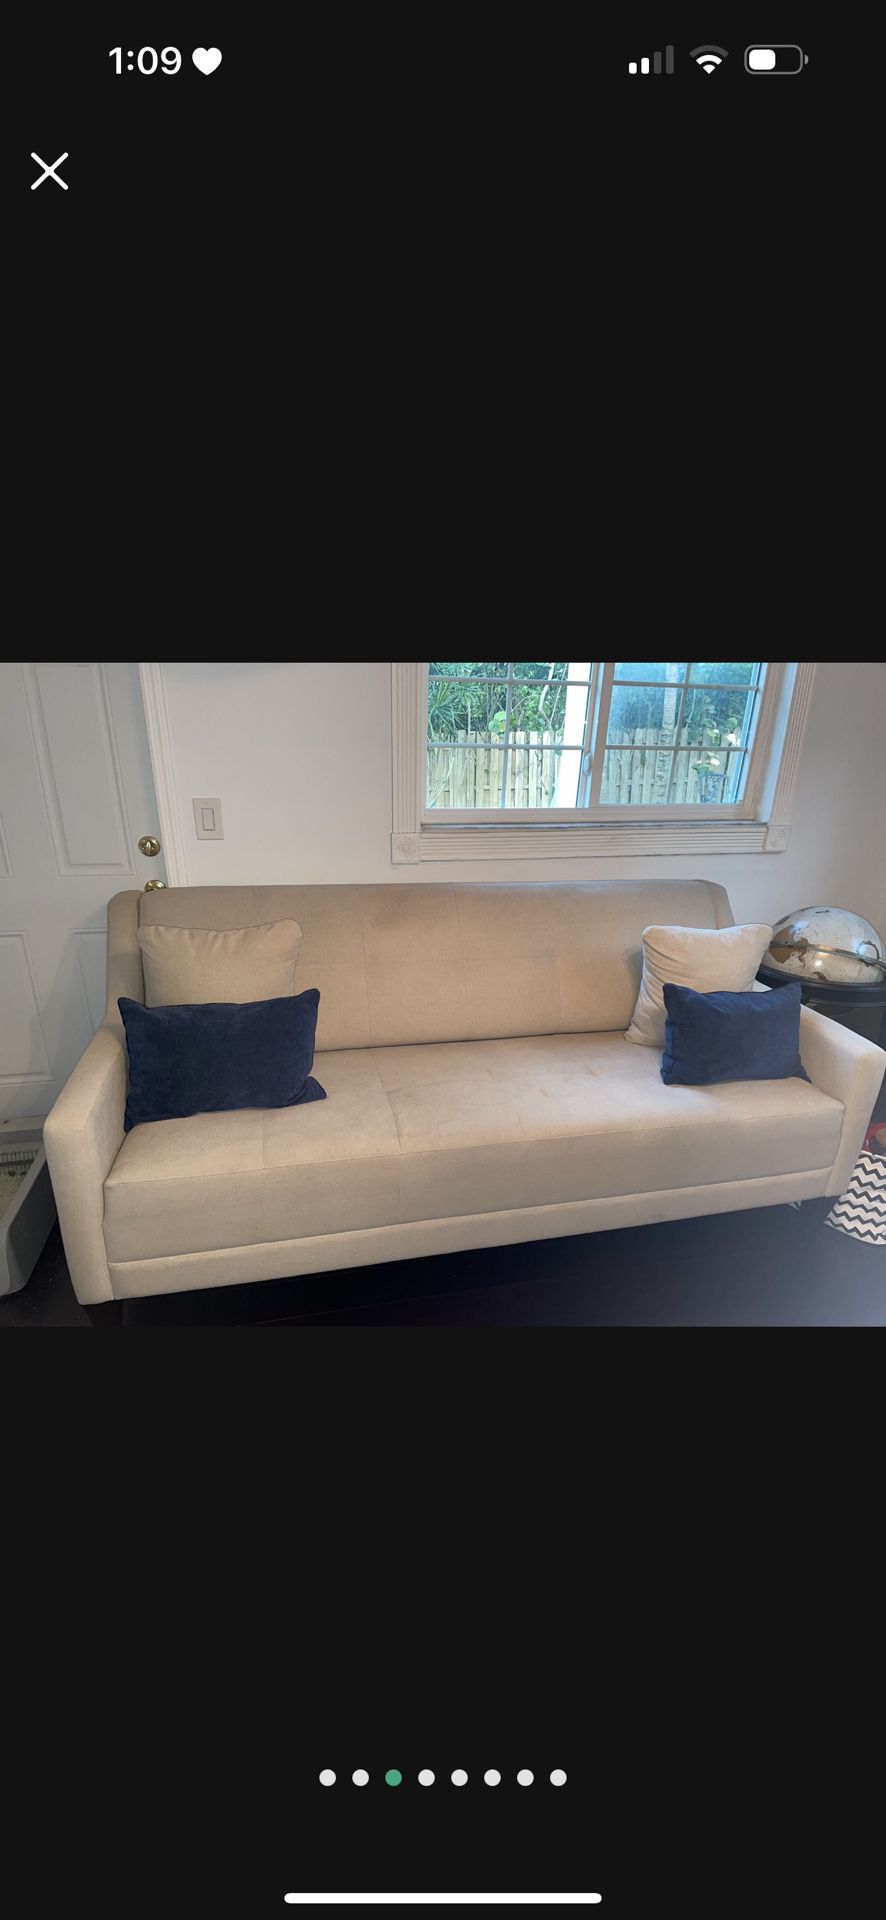 La-Z-Boy Couch set